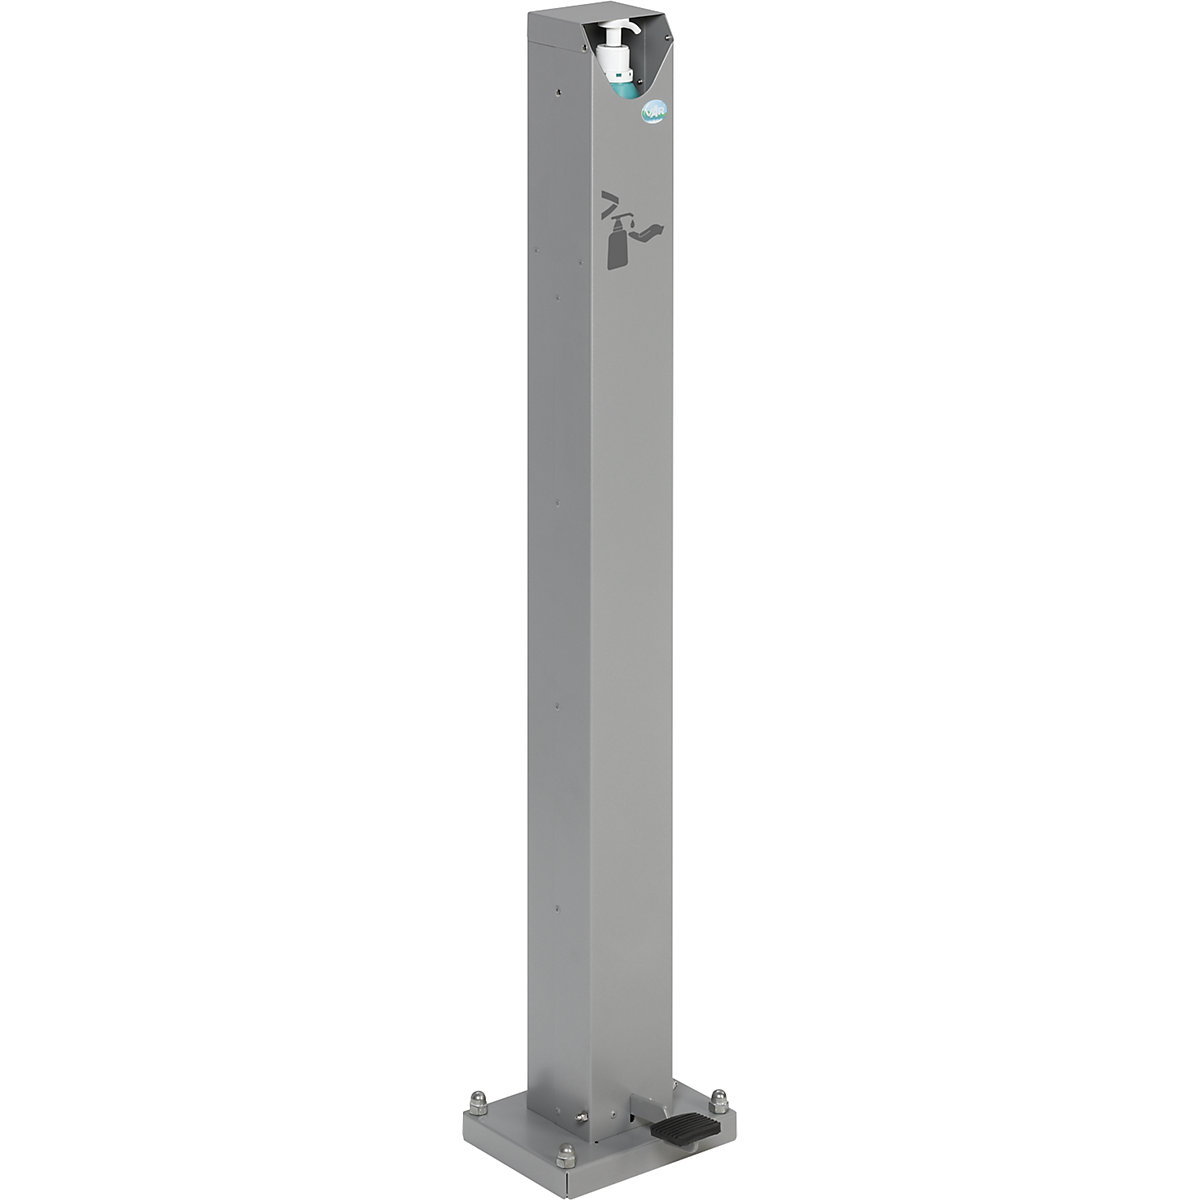 Coluna dispensadora de sabonete/desinfetante manual com pedal – VAR